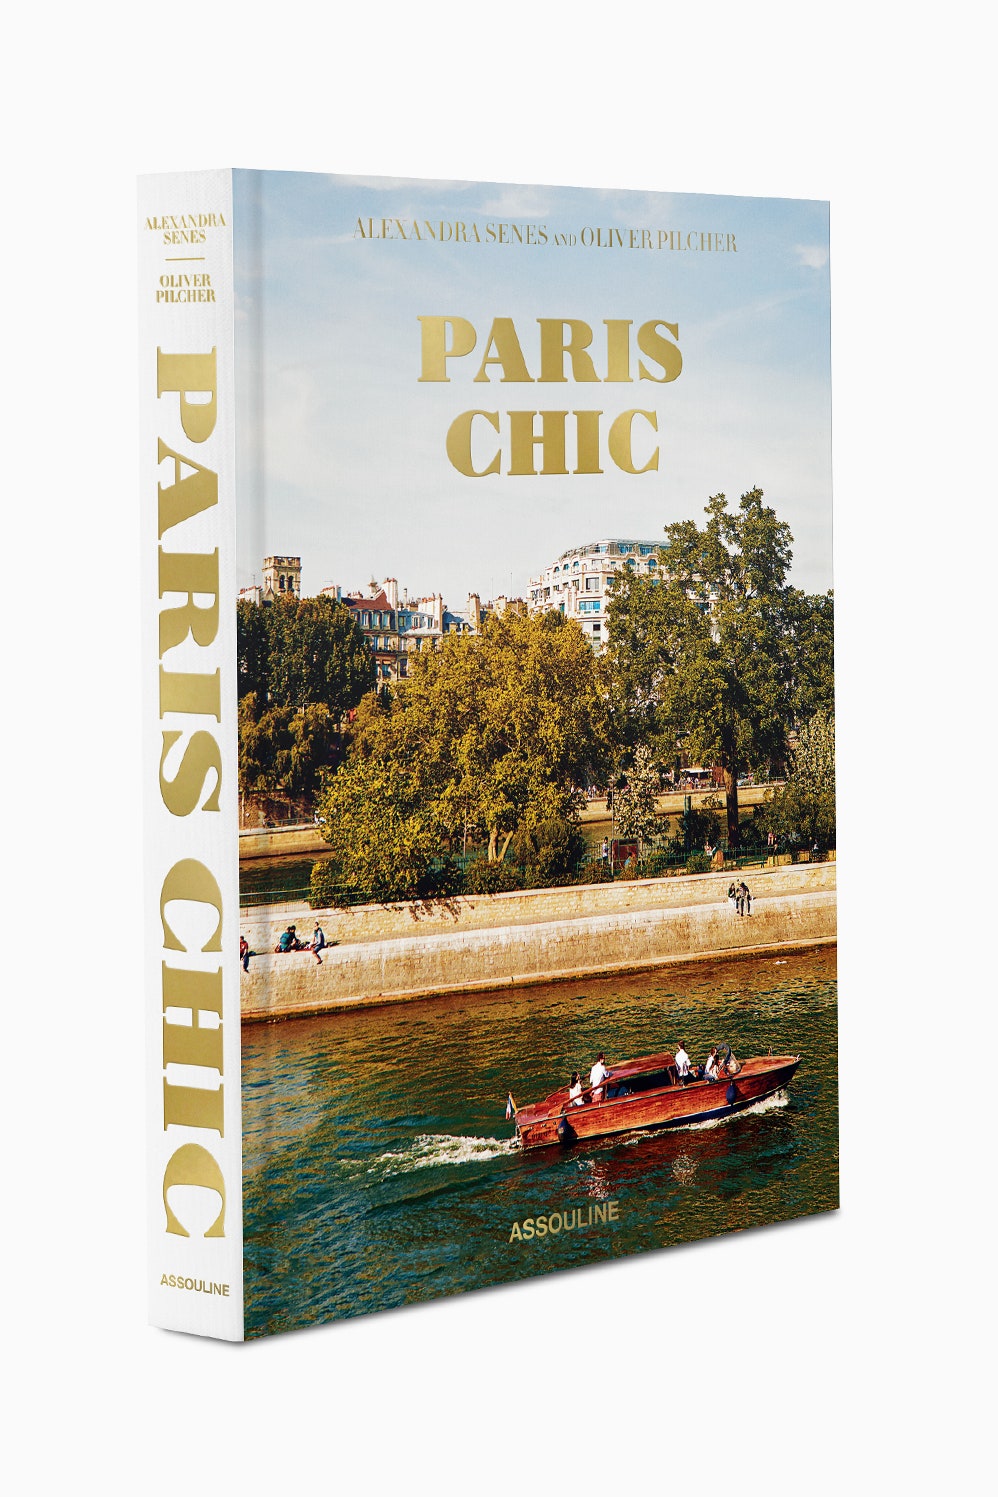 Весь Париж — от Эйфелевой башни до канала СенМартен — в этой книге